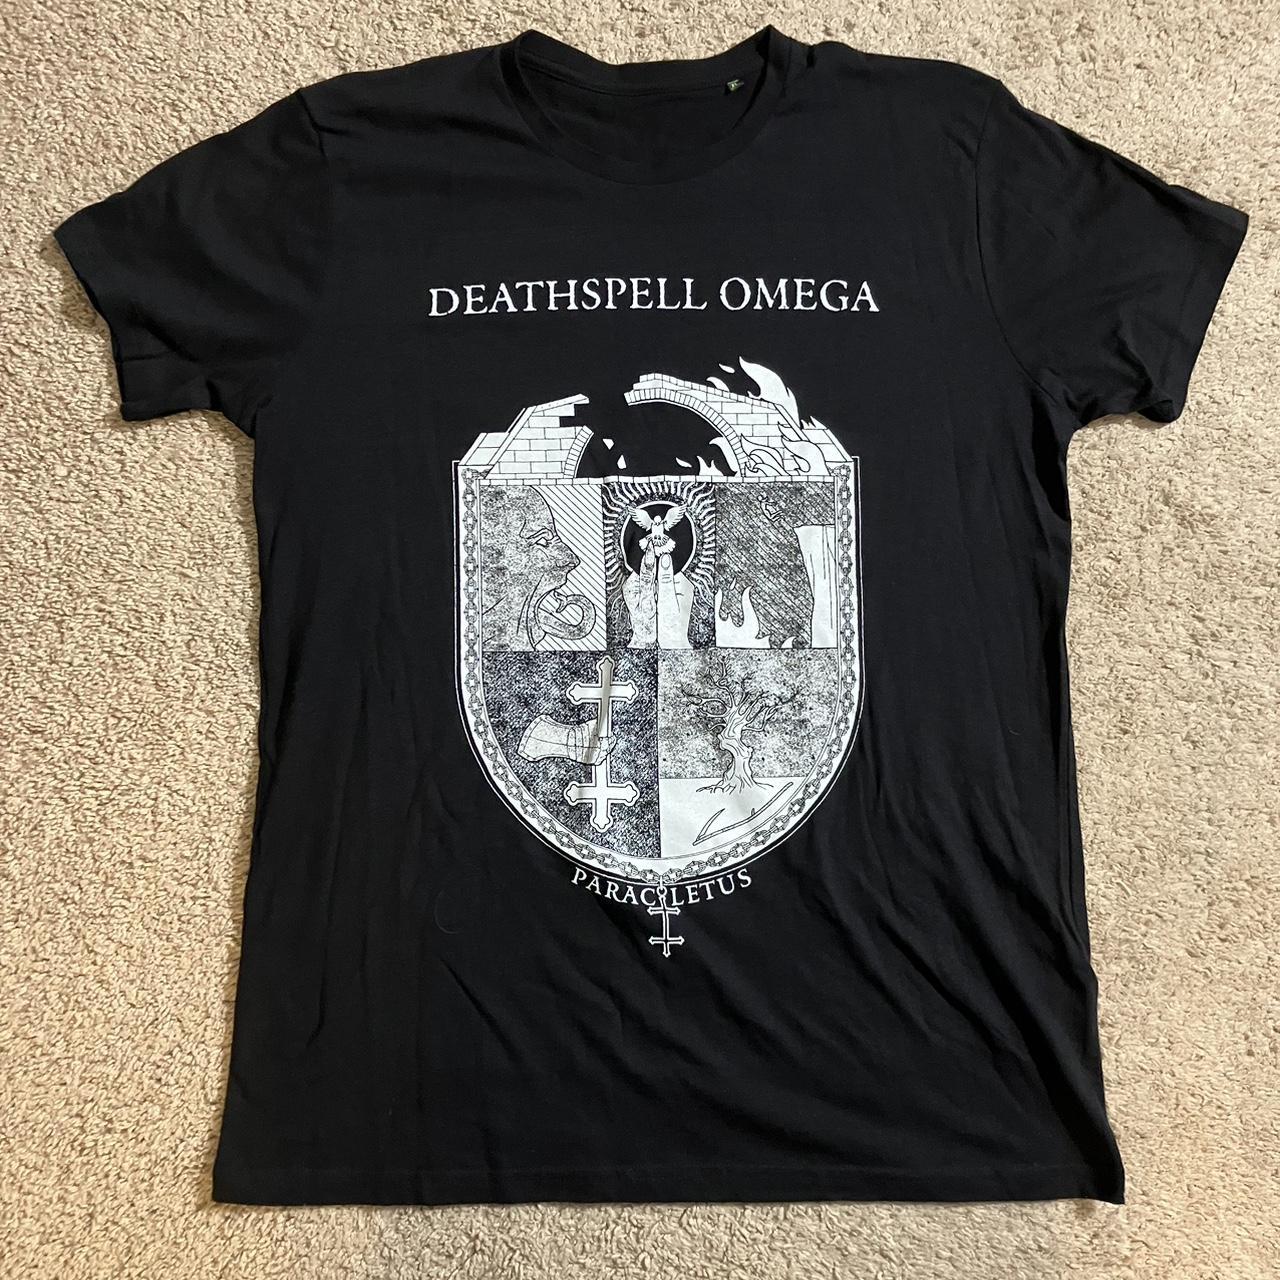 Deathspell Omega “Paracletus” tee. Size EU XL.... - Depop